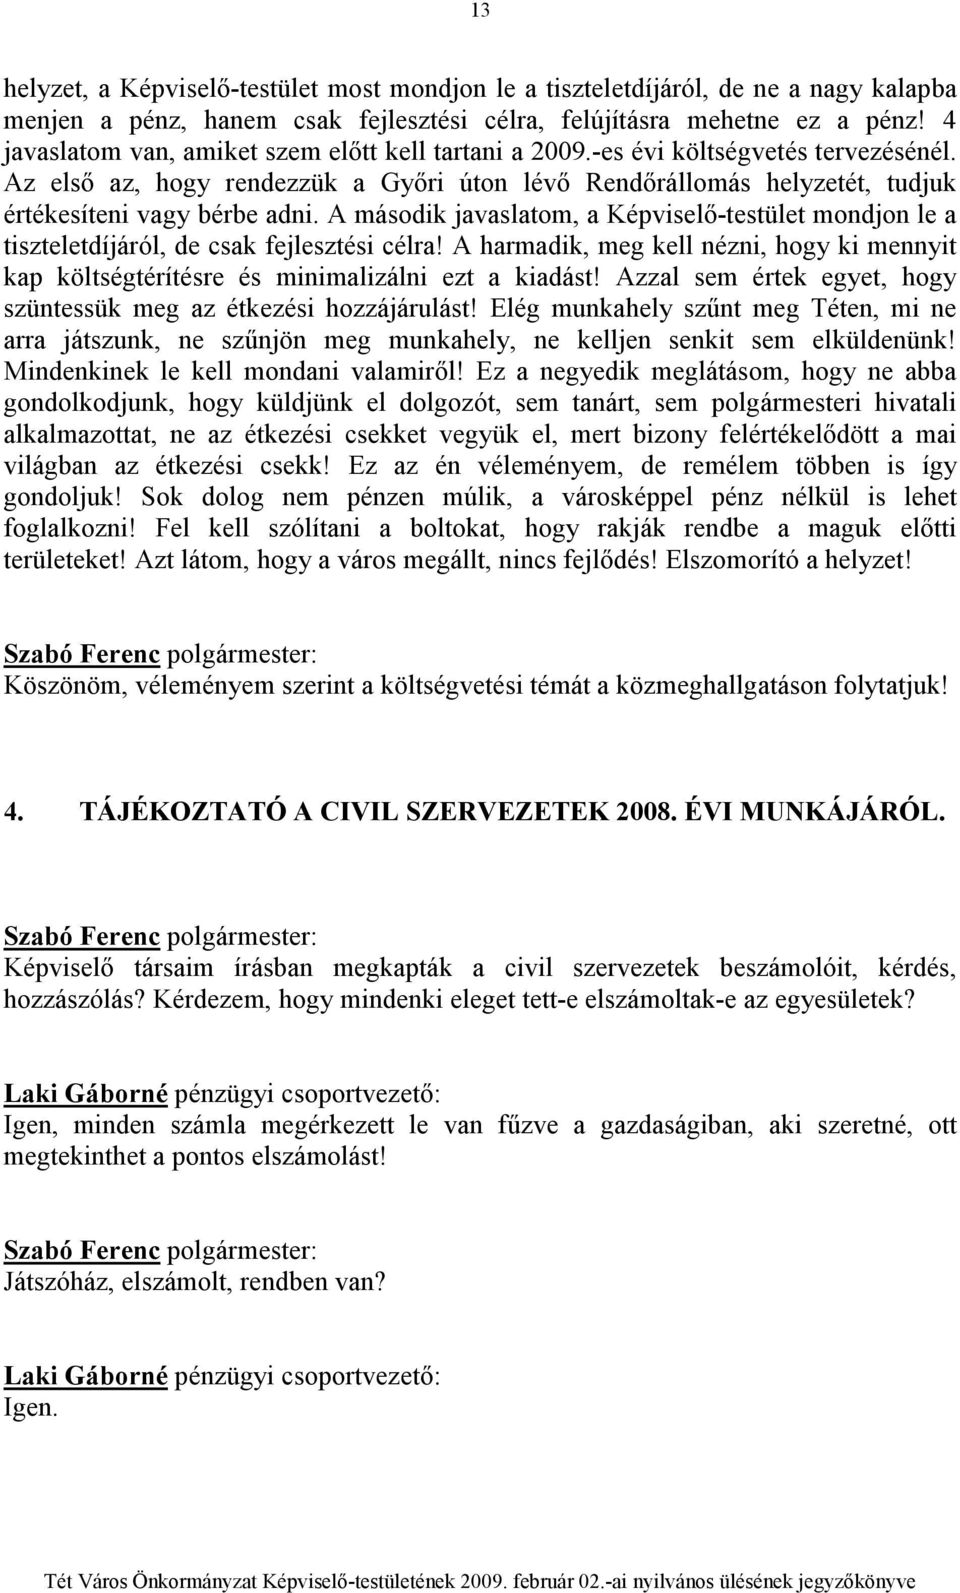 A második javaslatom, a Képviselı-testület mondjon le a tiszteletdíjáról, de csak fejlesztési célra! A harmadik, meg kell nézni, hogy ki mennyit kap költségtérítésre és minimalizálni ezt a kiadást!